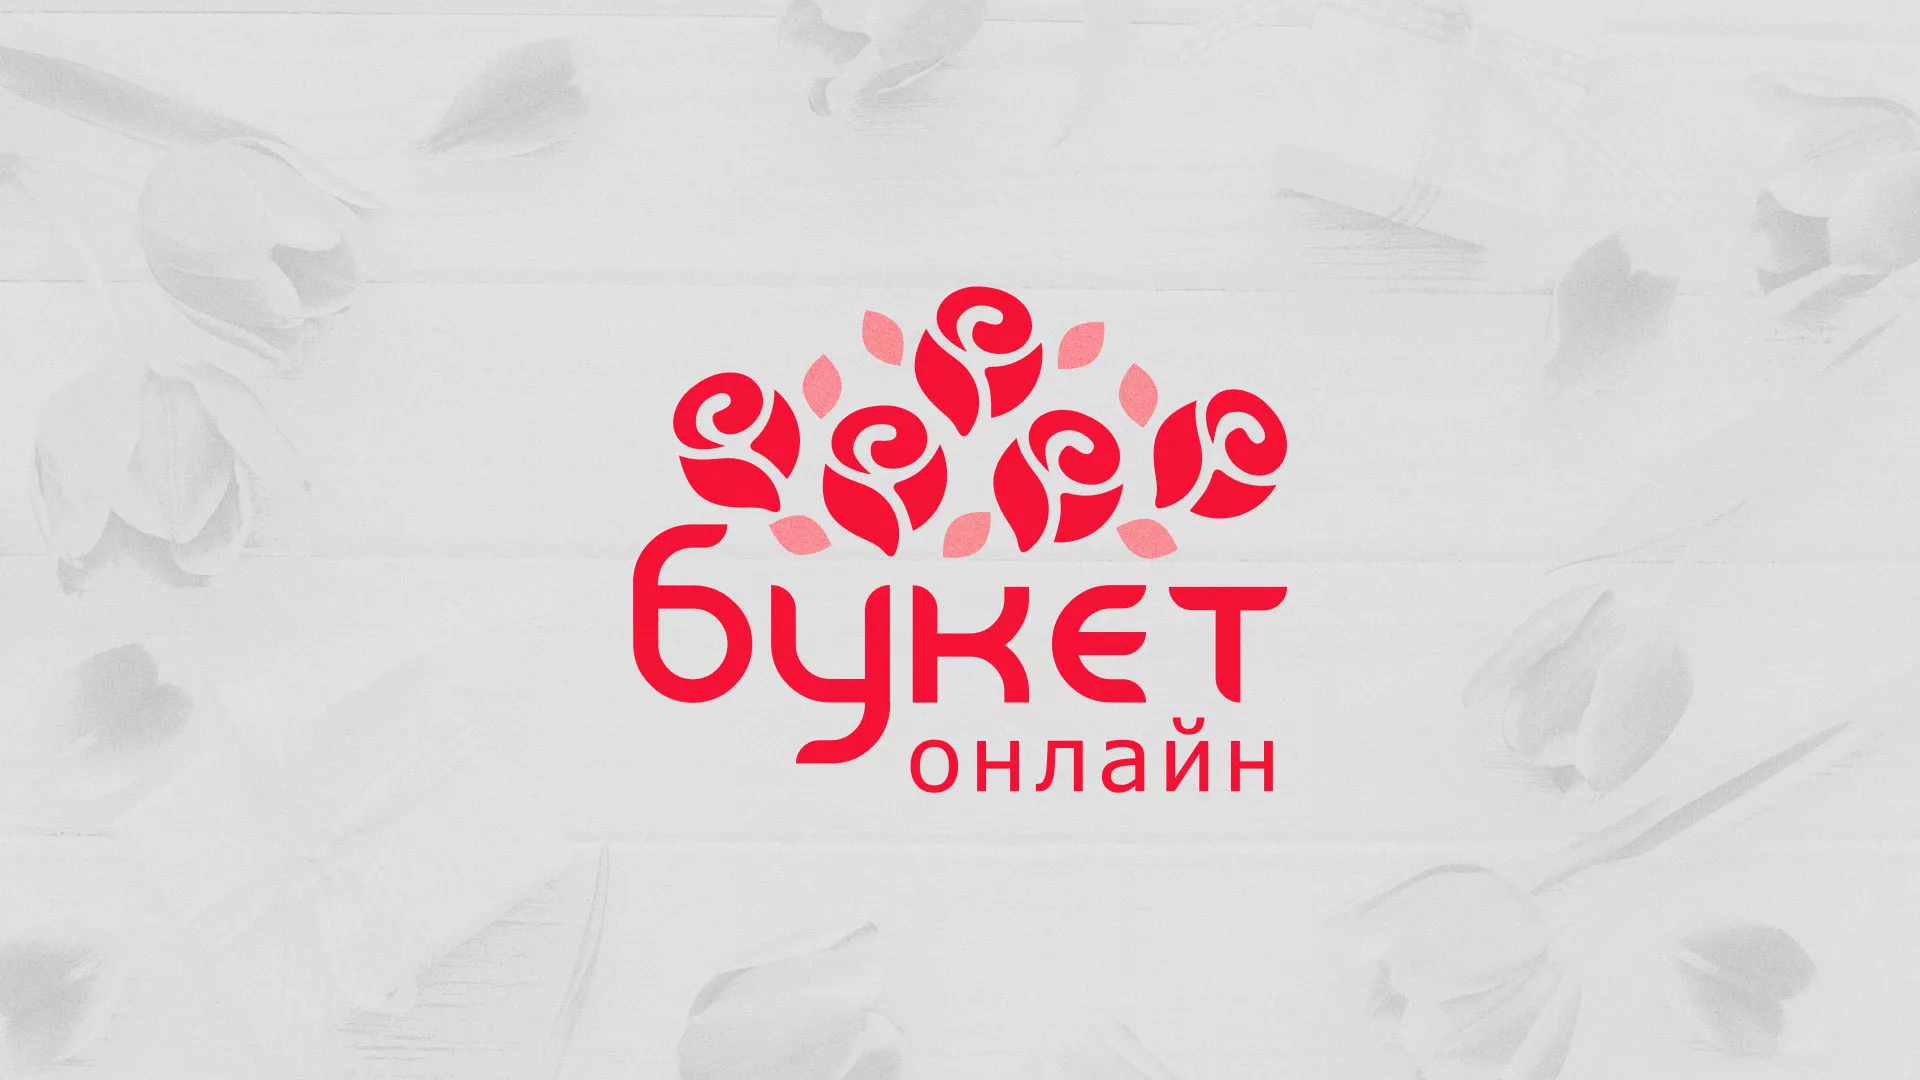 Создание интернет-магазина «Букет-онлайн» по цветам в Краснослободске